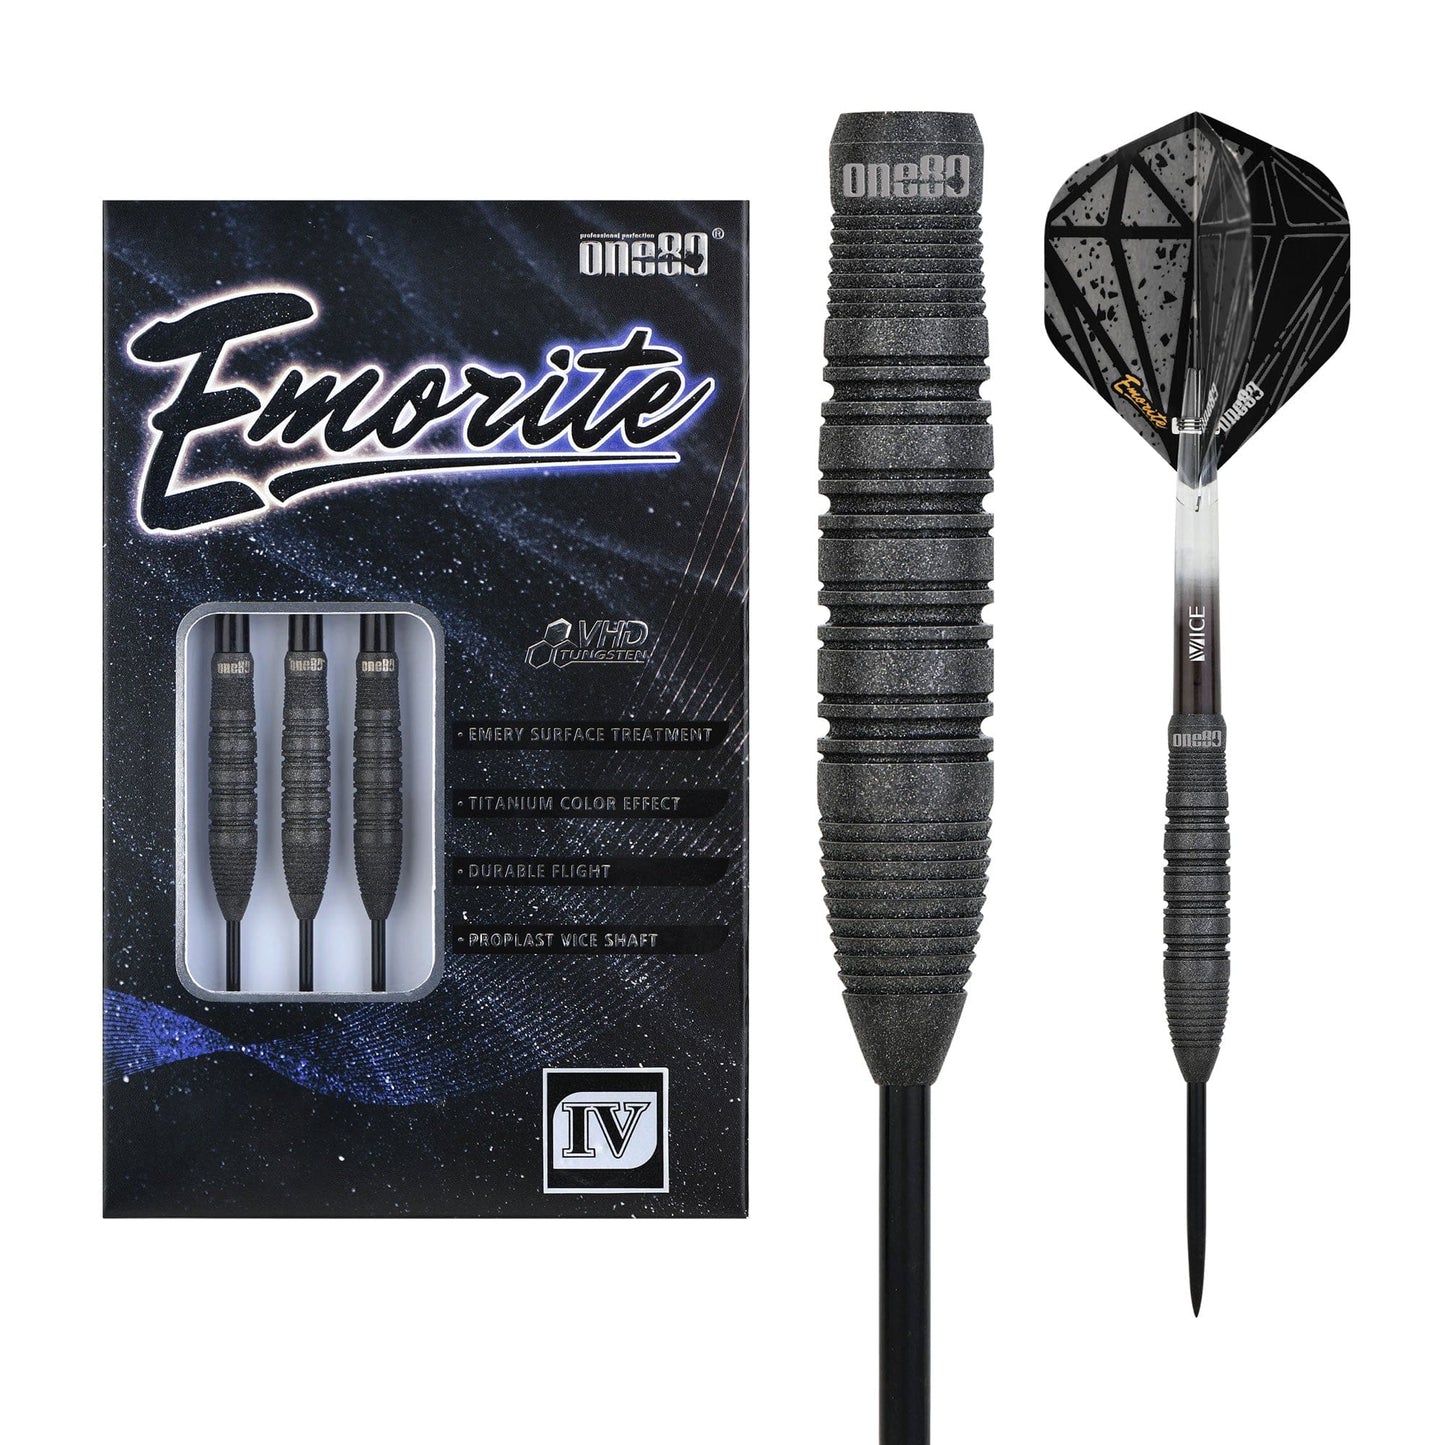 One80 Emorite 04 Darts - Steel Tip - 90% Tungsten - Black